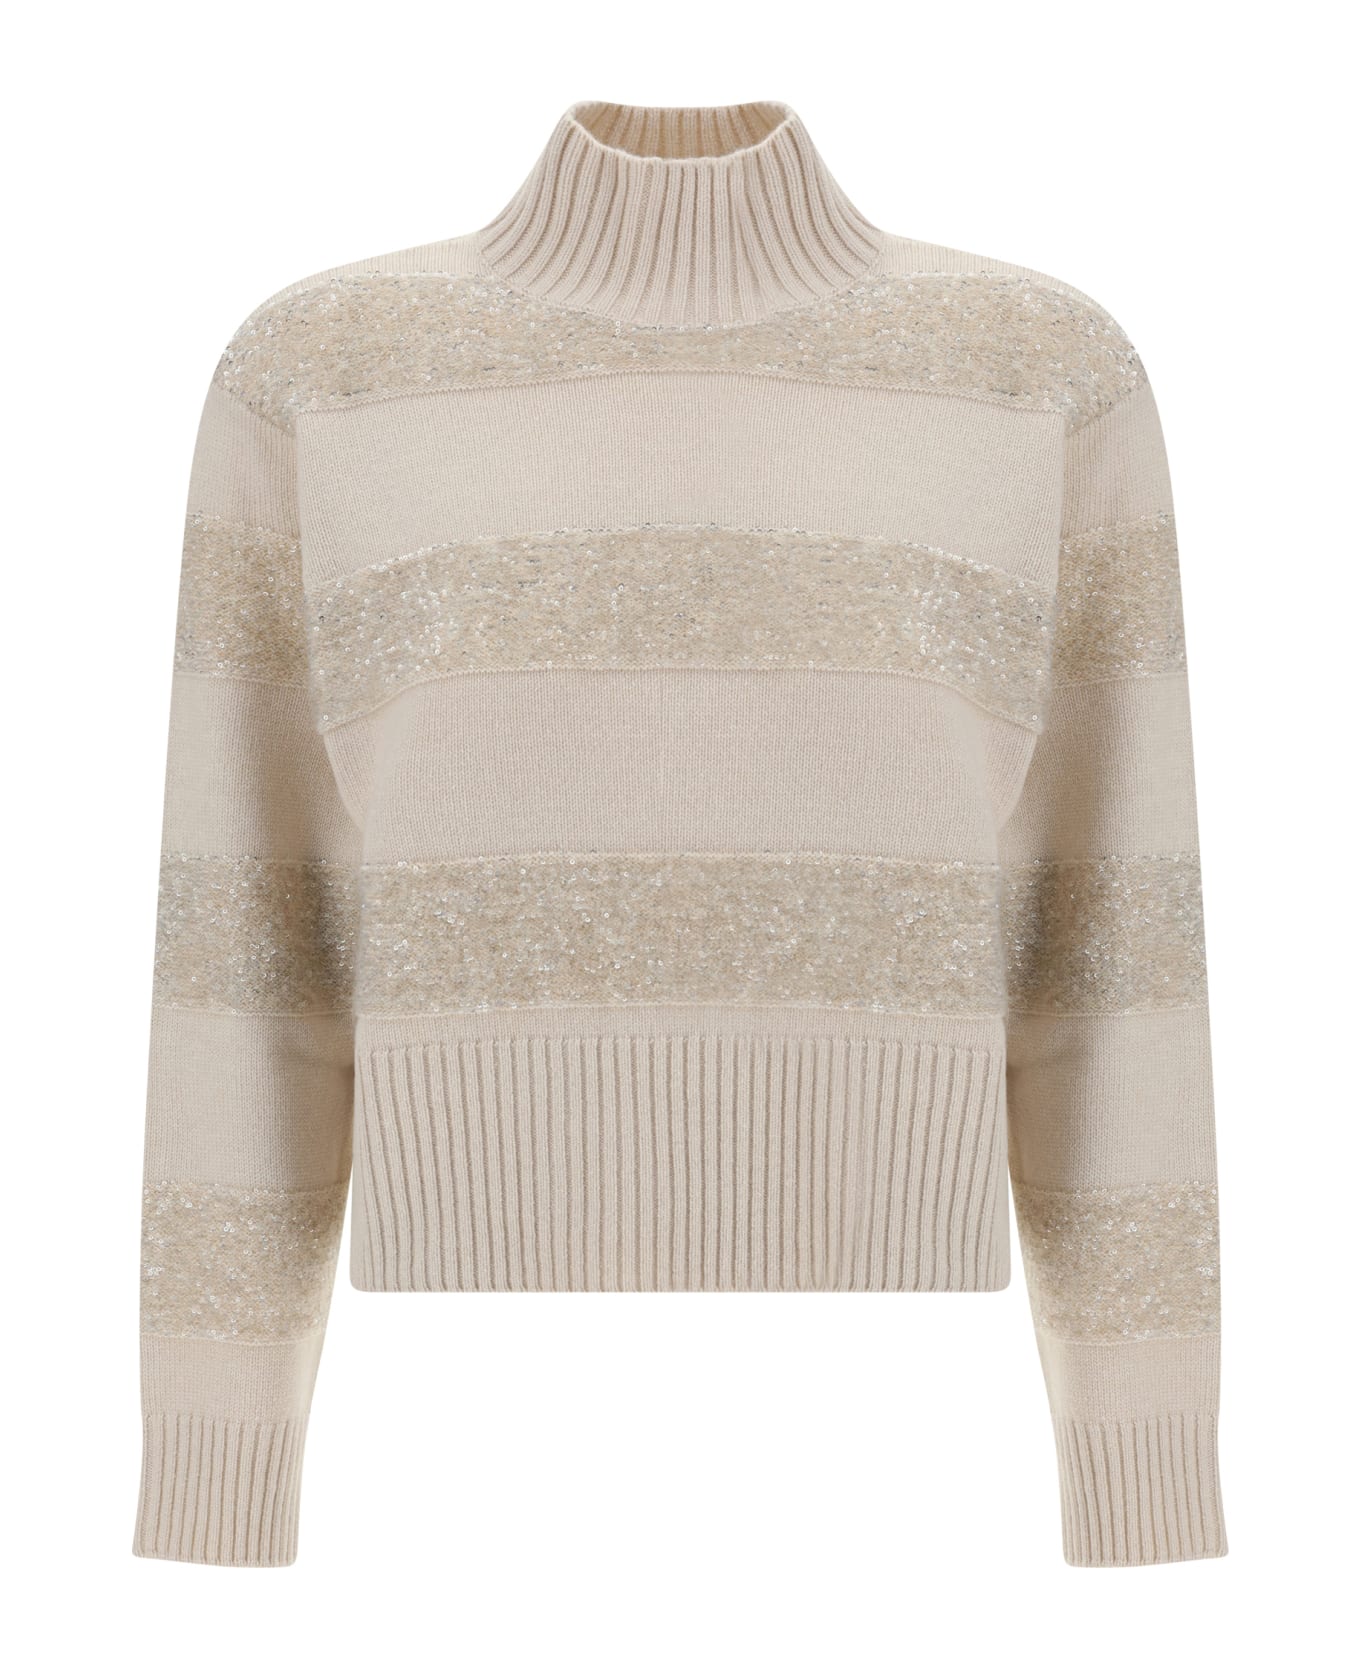 Brunello Cucinelli Wool And Silk Knit Sweater - Beige